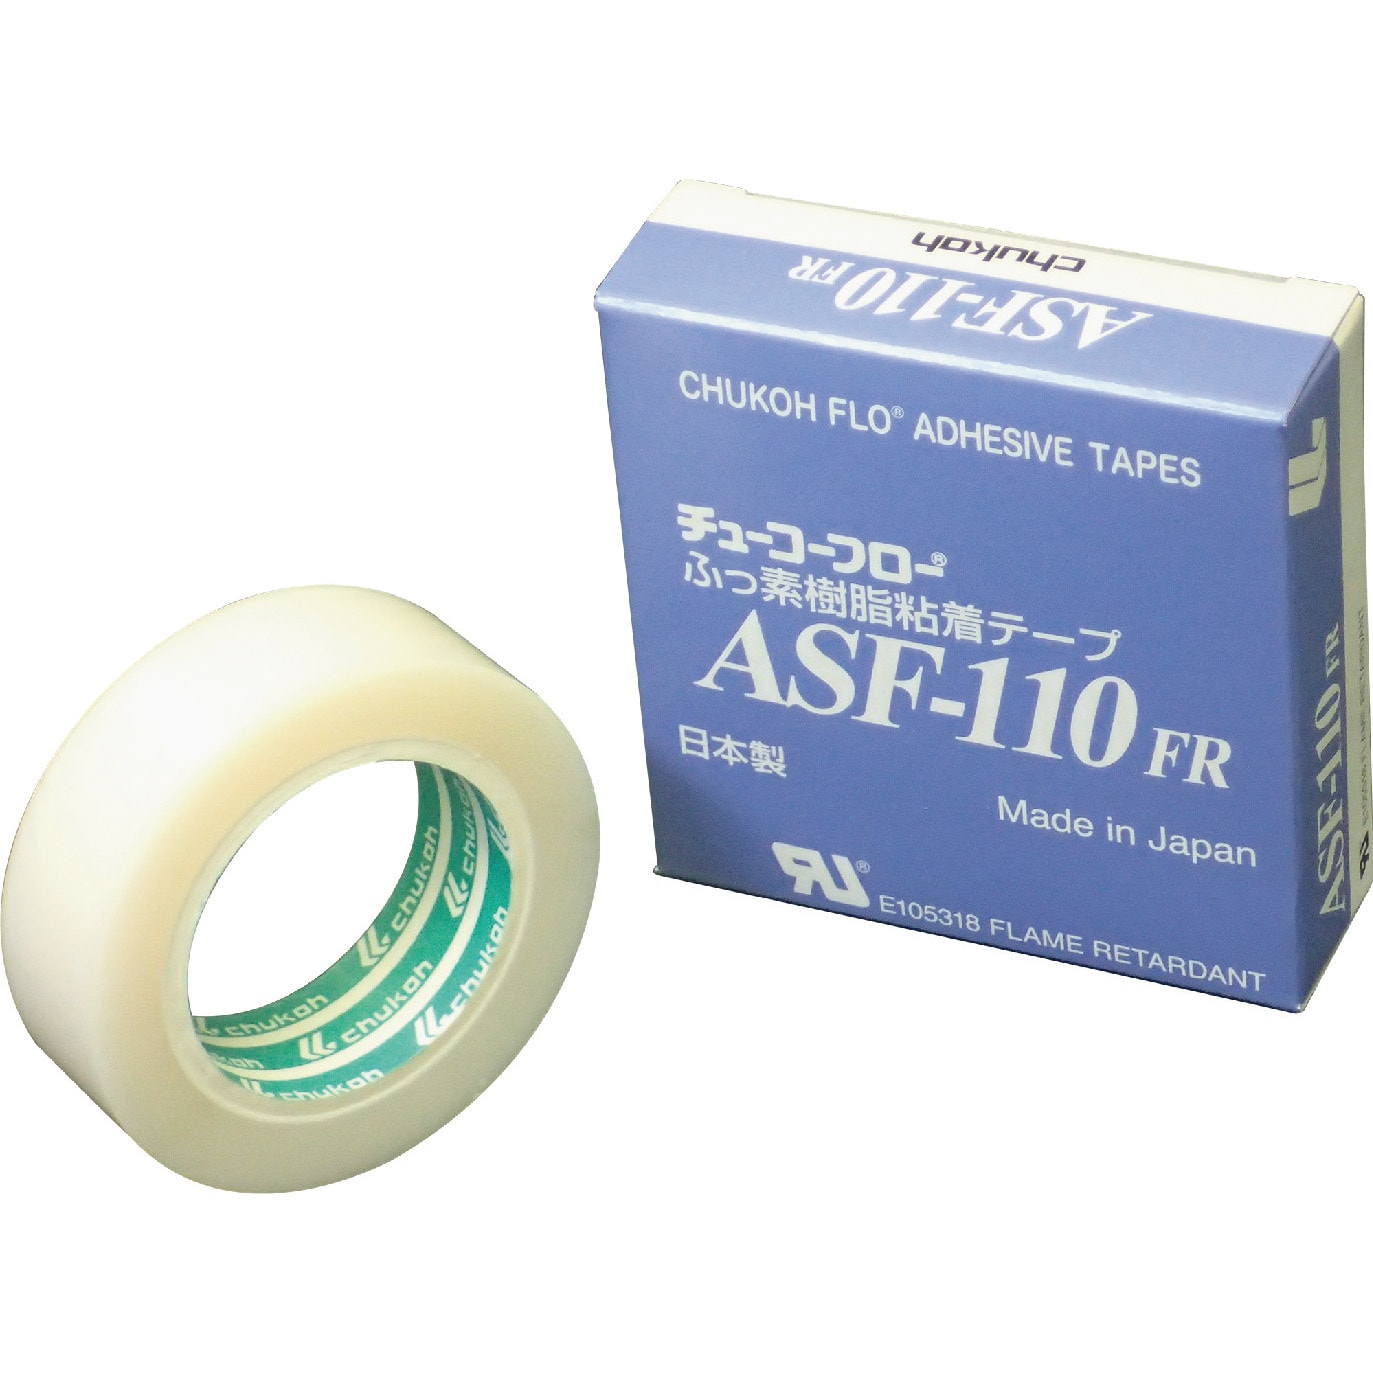 チューコーフロー フッ素樹脂フィルム粘着テープ ASFー110FR 0.18t×25w